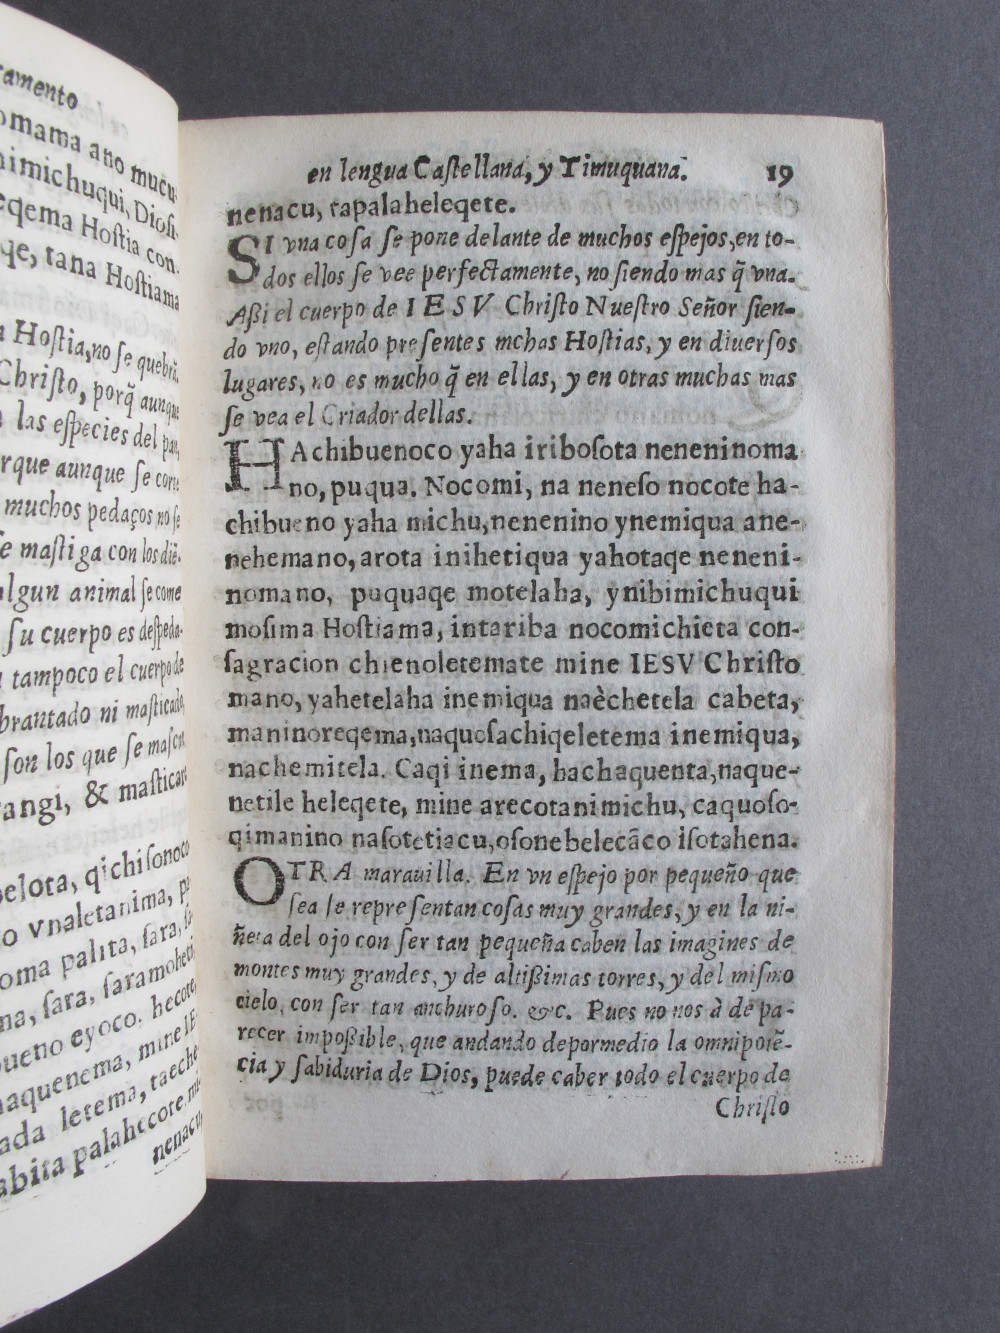 Folio C6 recto